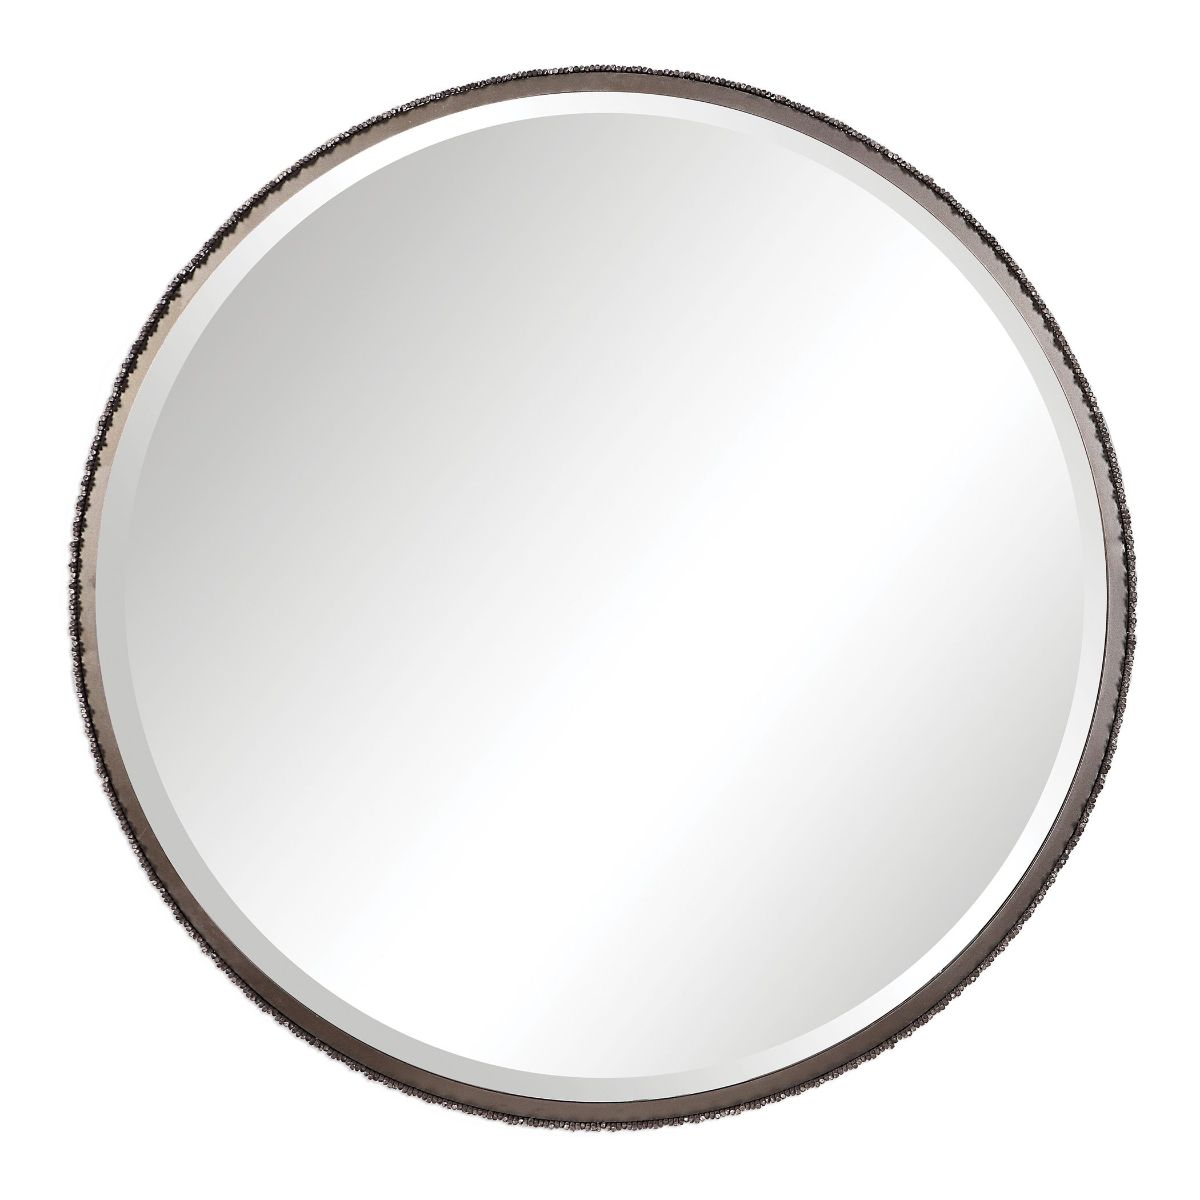 Uttermost Ada Round Steel Mirror